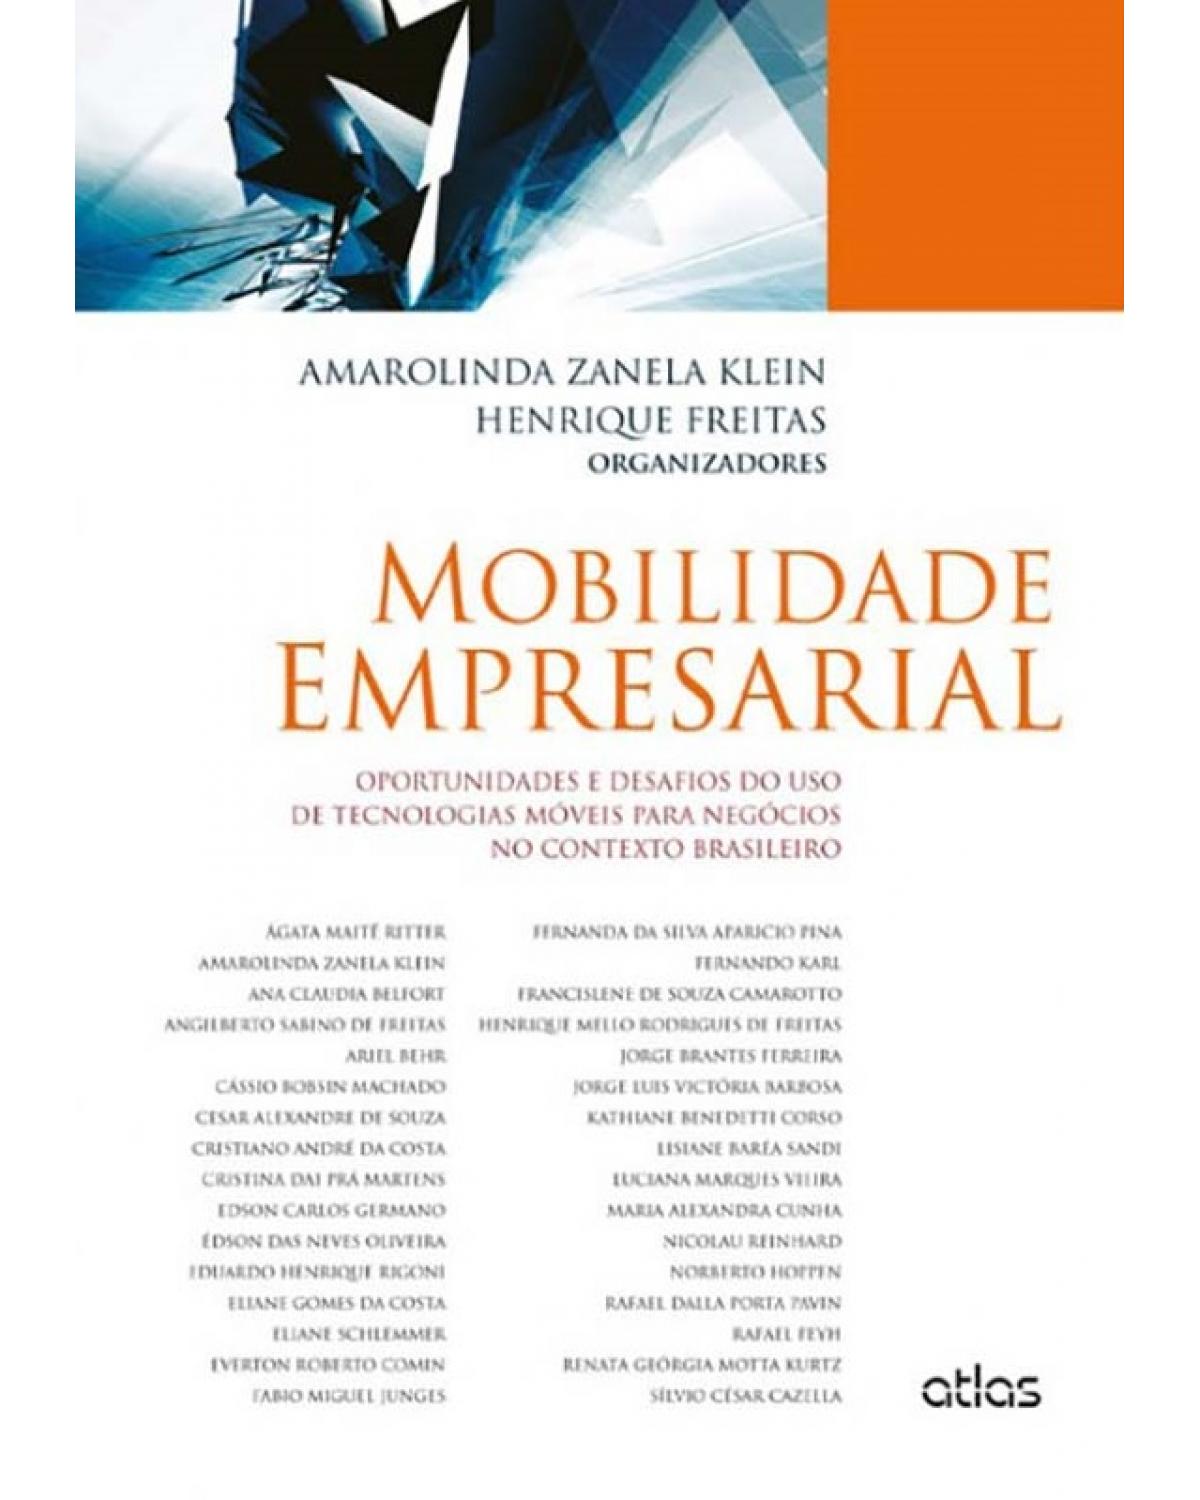 Mobilidade empresarial - Oportunidades e desafios do uso de tecnologias móveis para negócios no contexto brasileiro - 1ª Edição | 2014